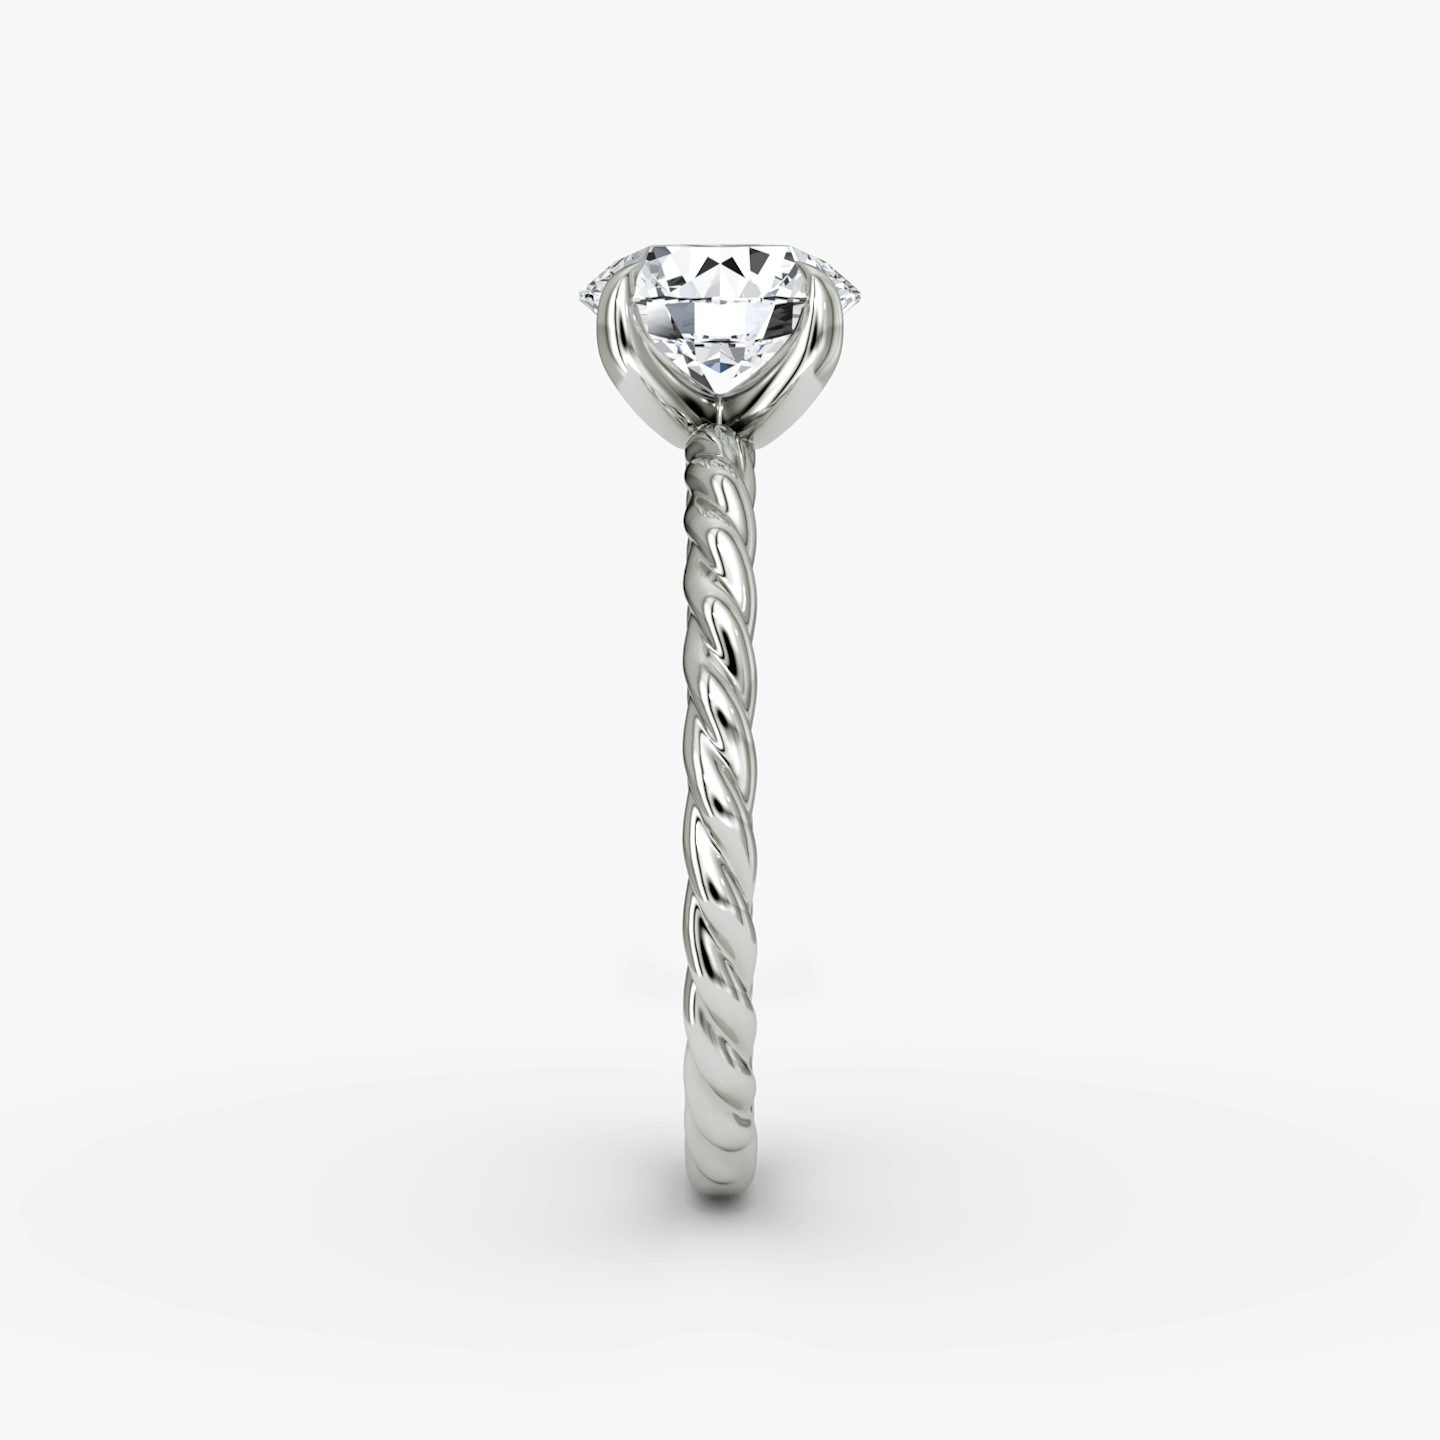 The Classic Rope | Round Brilliant | Platinum | Carat weight: 1½ | Diamond orientation: vertical